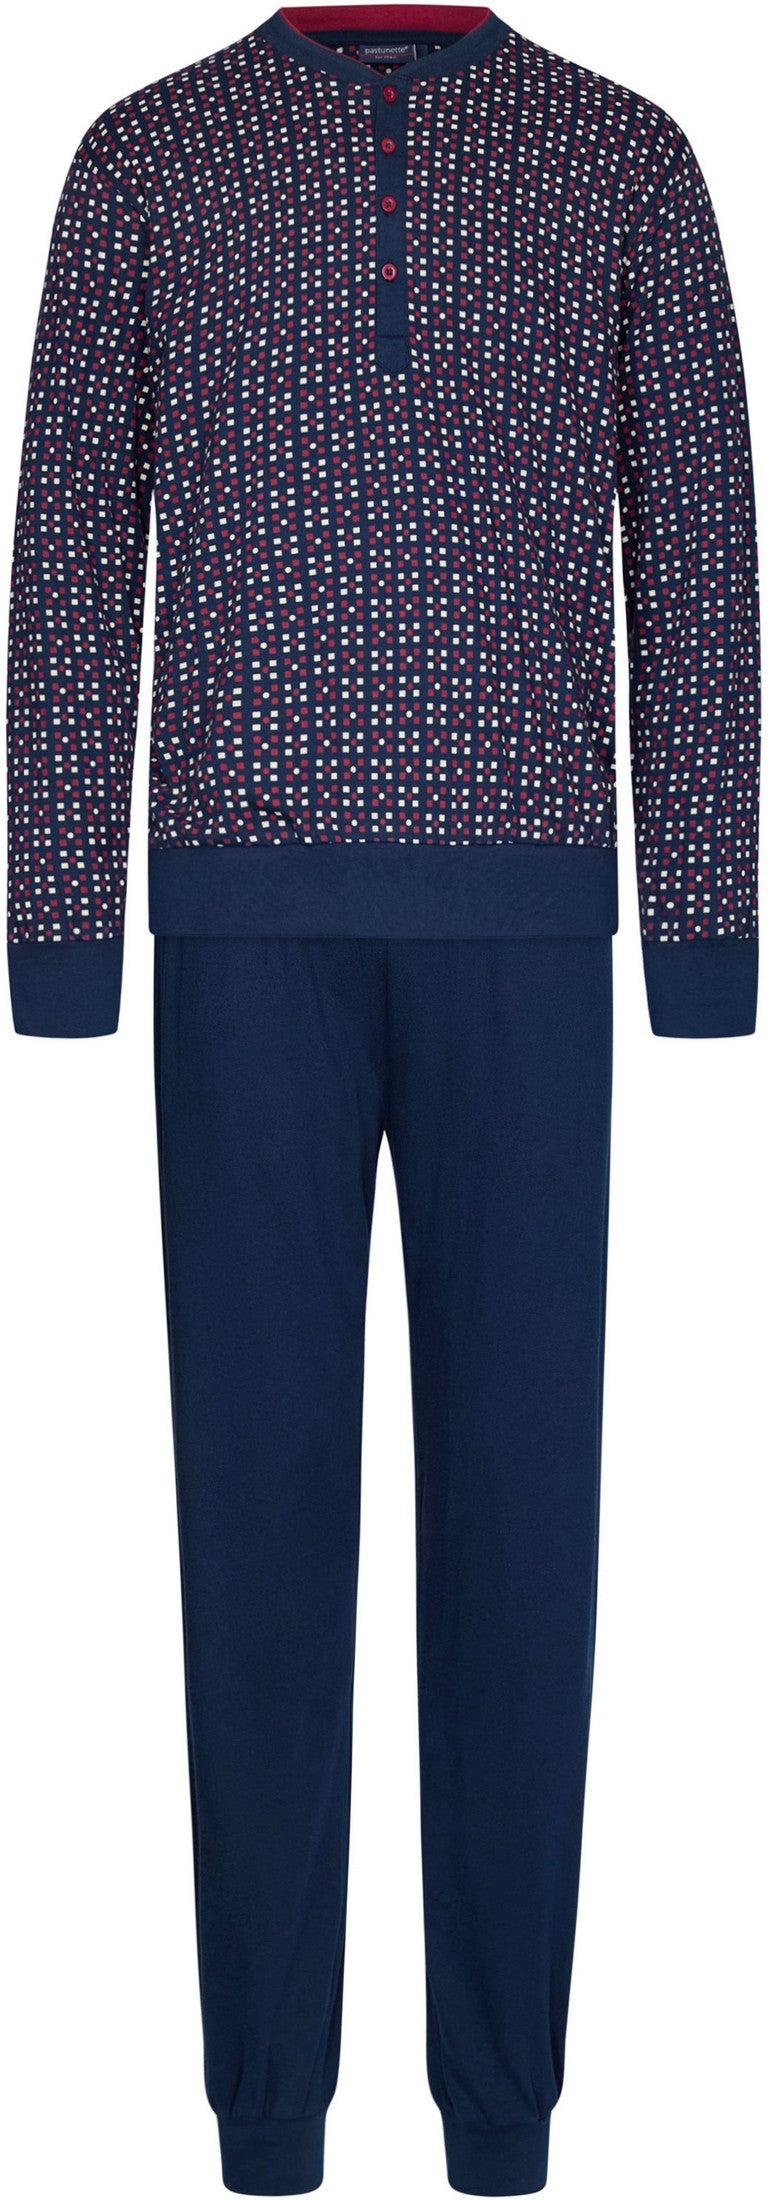 Pyjama 23232-602-4 529 blauw